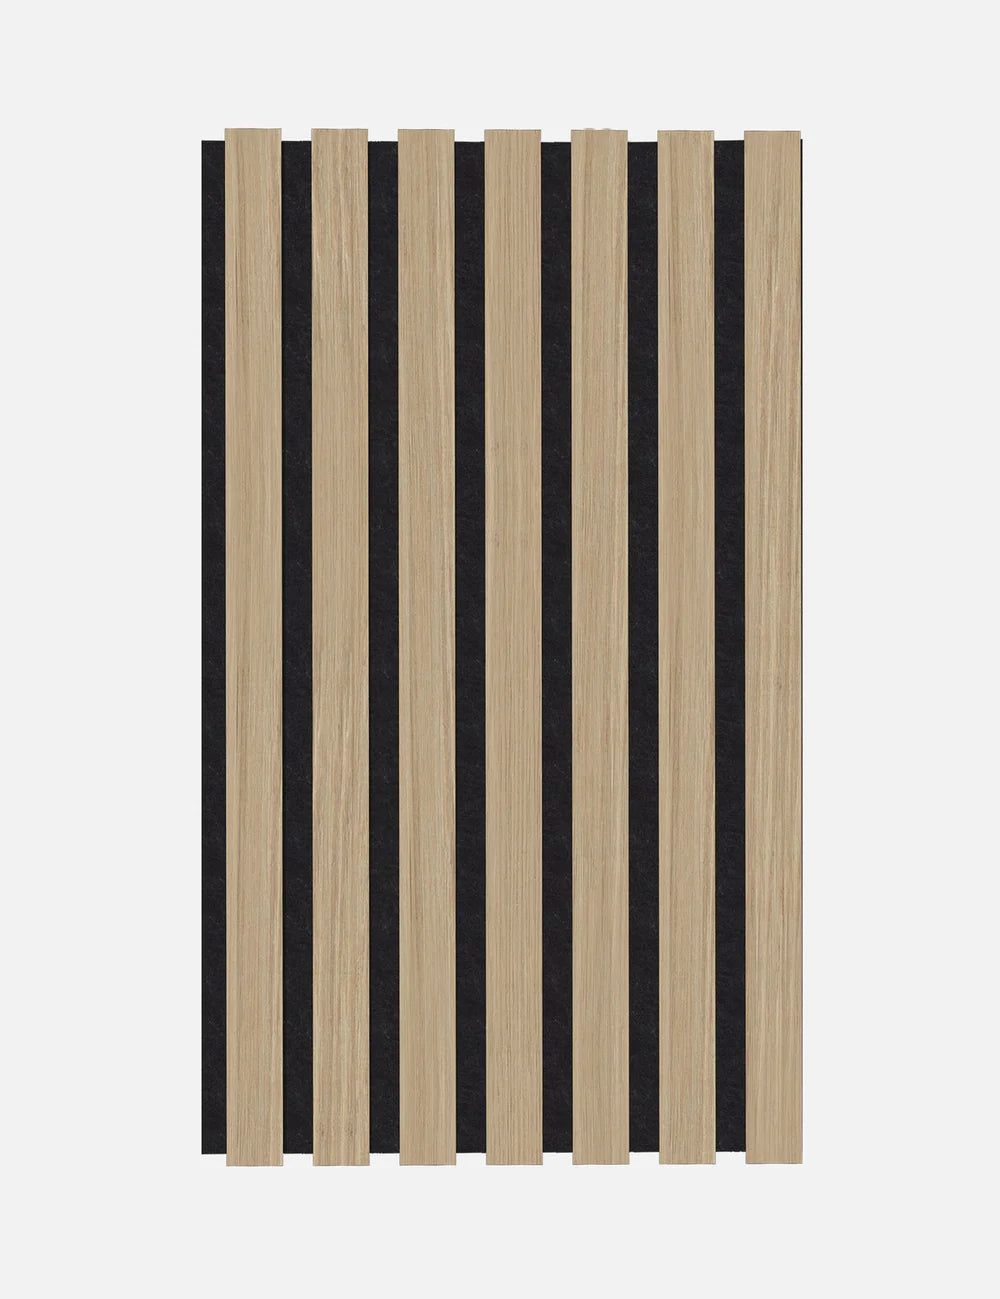 Muster Eiche MDF Natur Leicht - 20x12cm